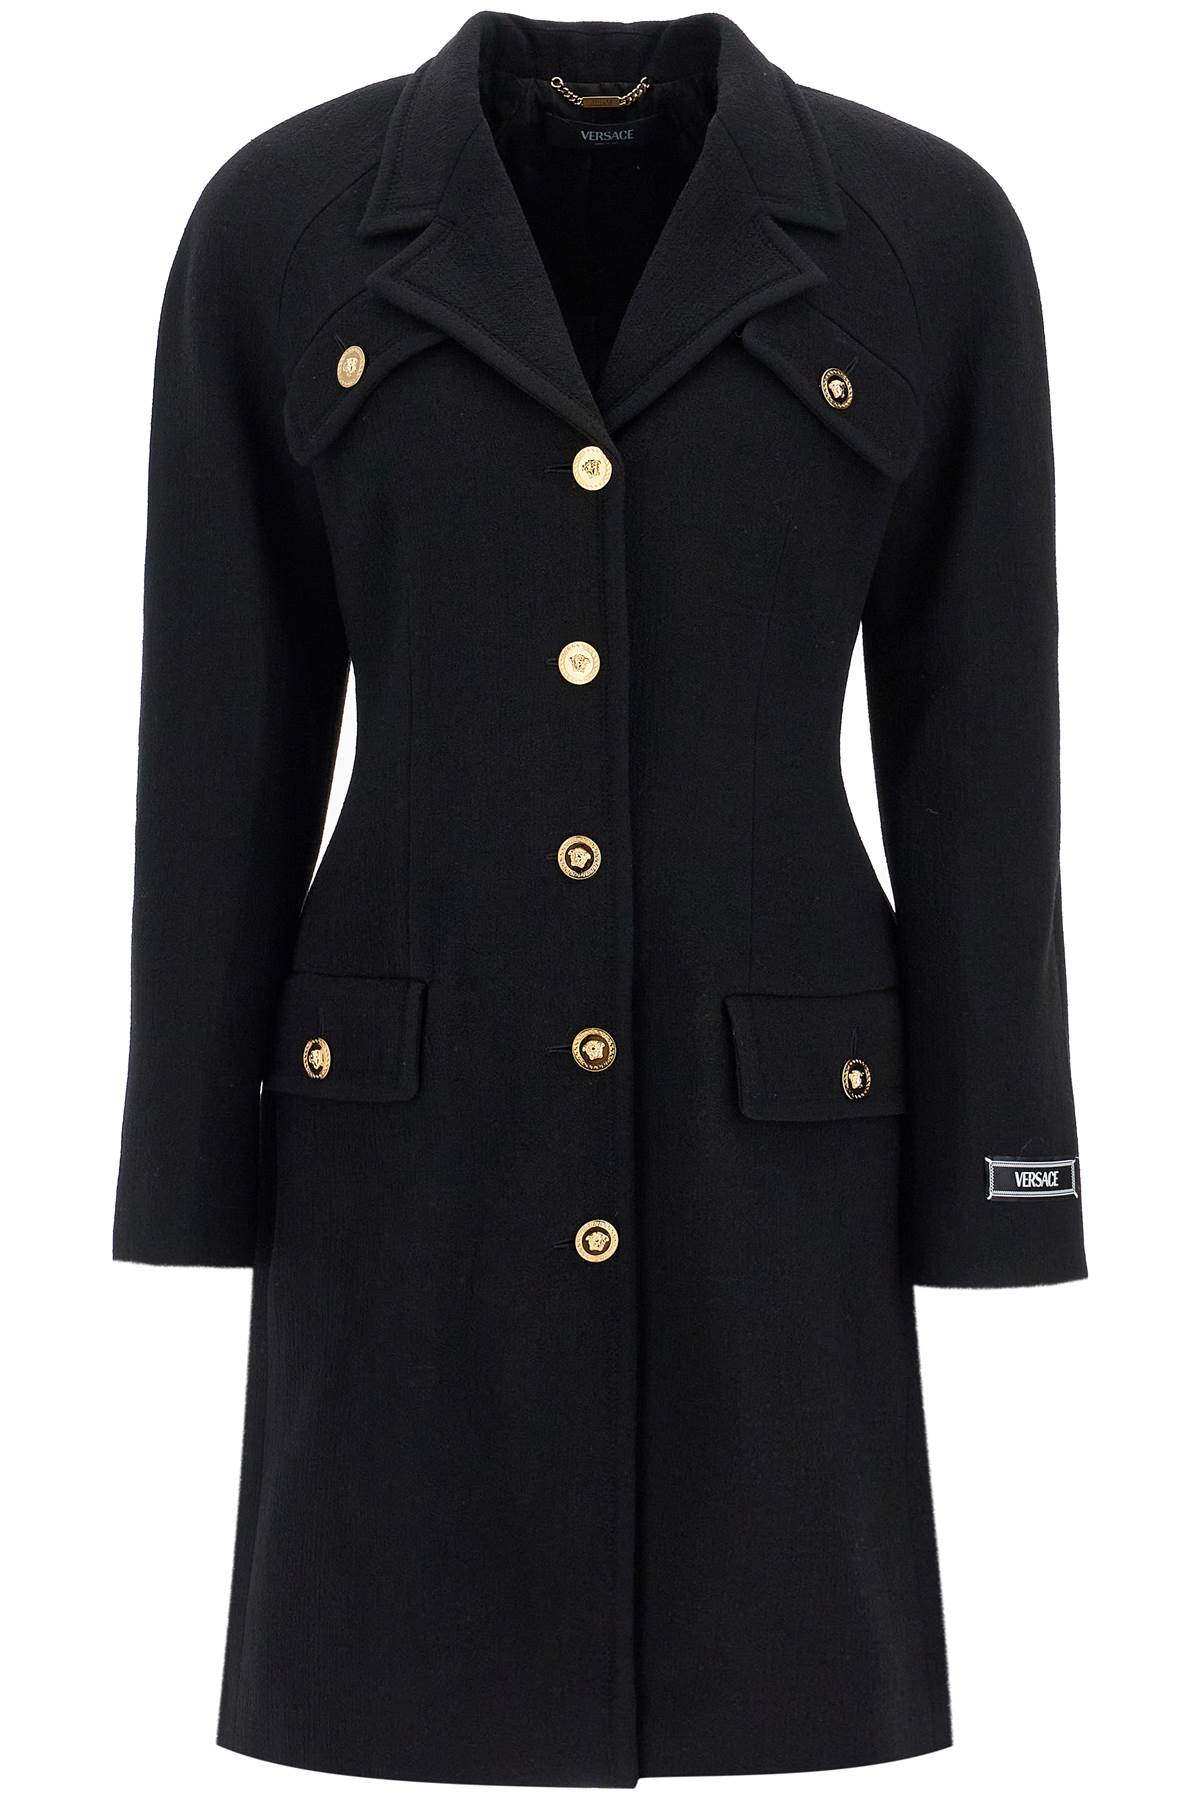 Versace VERSACE raglan crepe coat